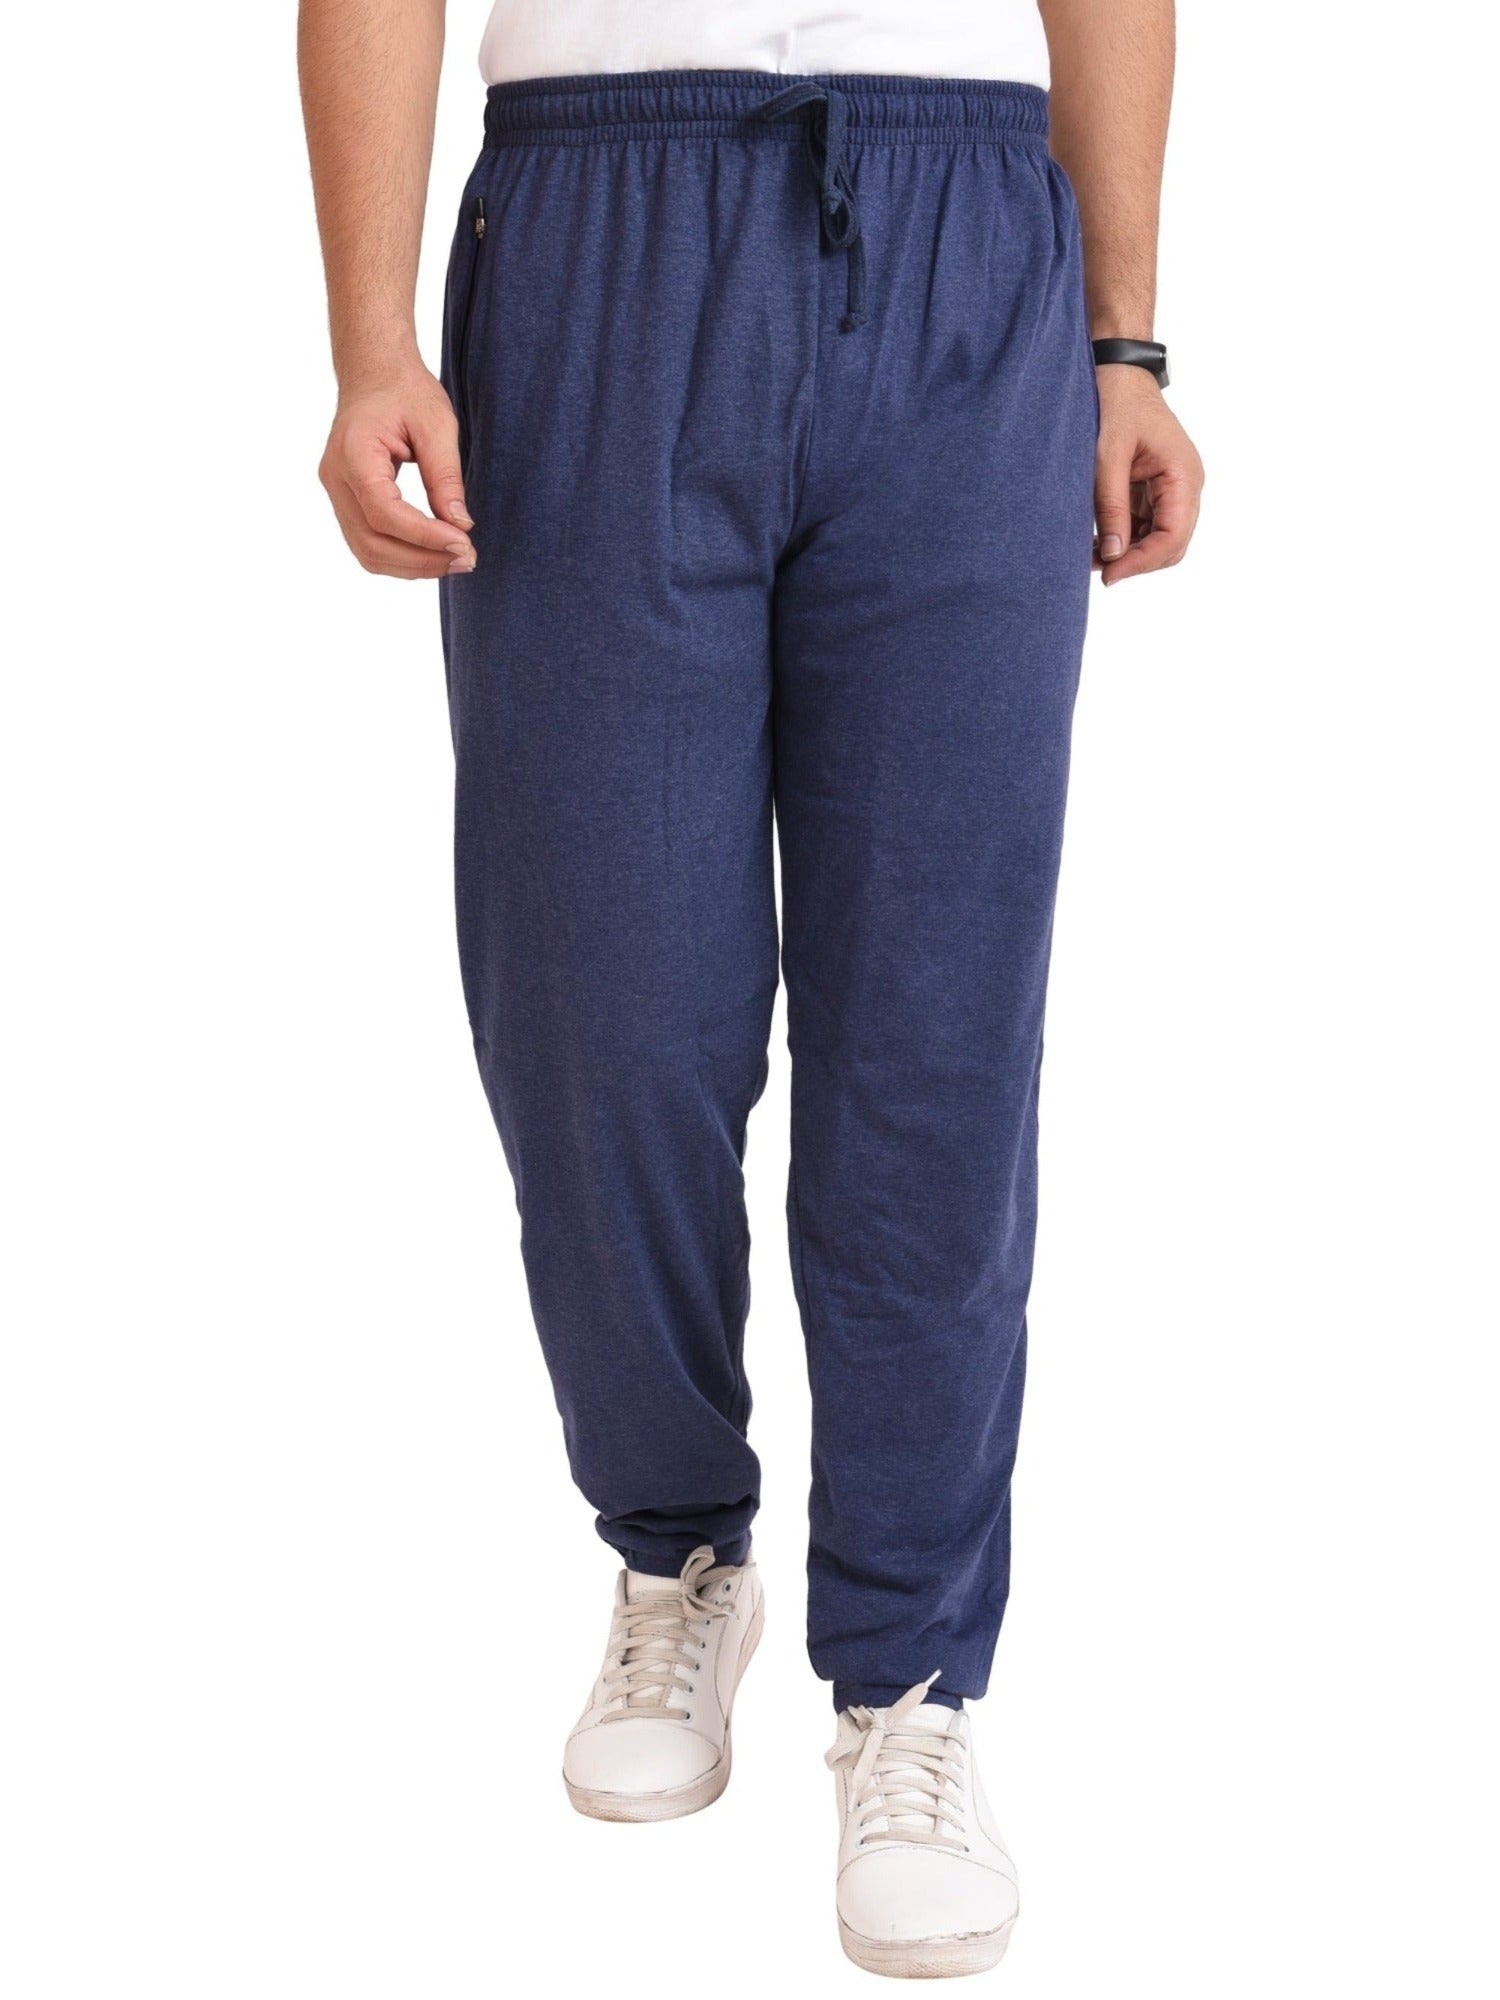 Buy Highlander Blue Slim Fit Casual Track Pant for Men Online at Rs.479 -  Ketch